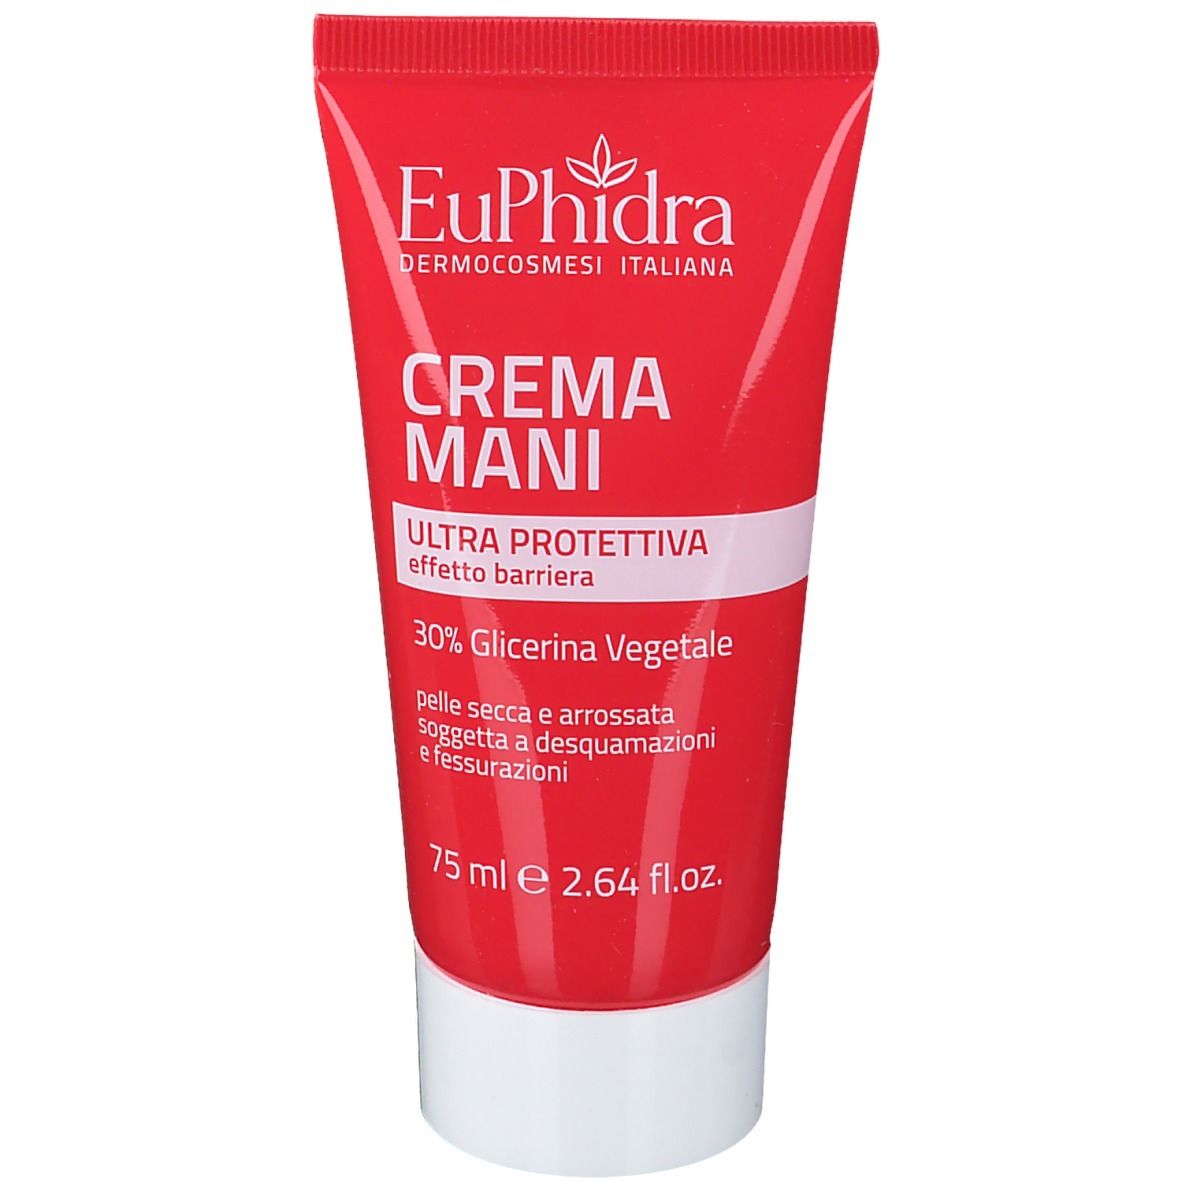 EuPhidra Crema Mani Ultra Protettiva